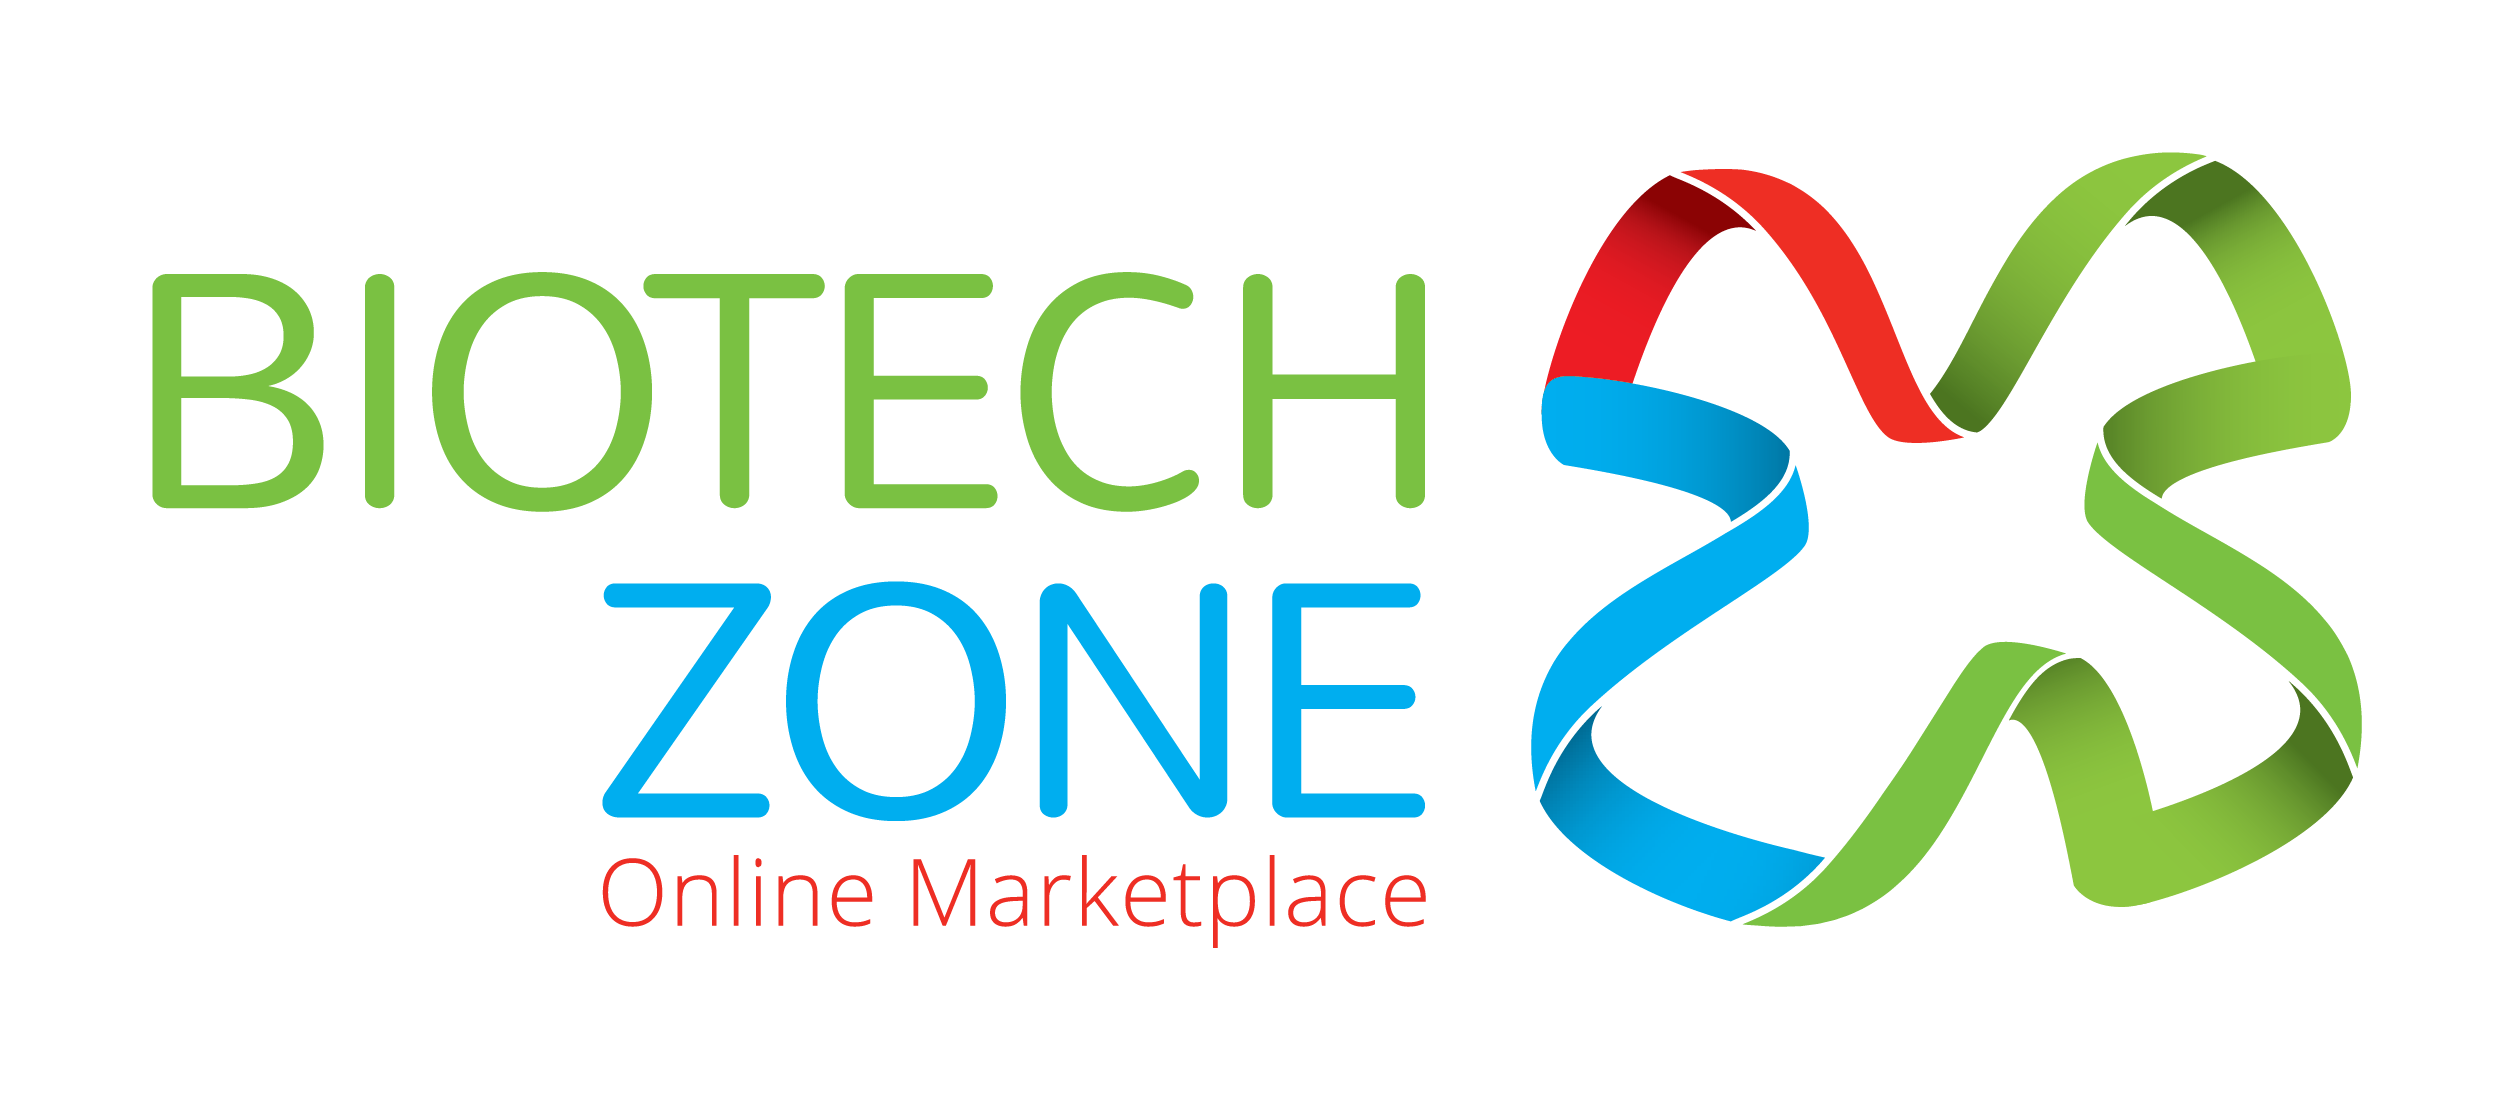 Biotechzone logo